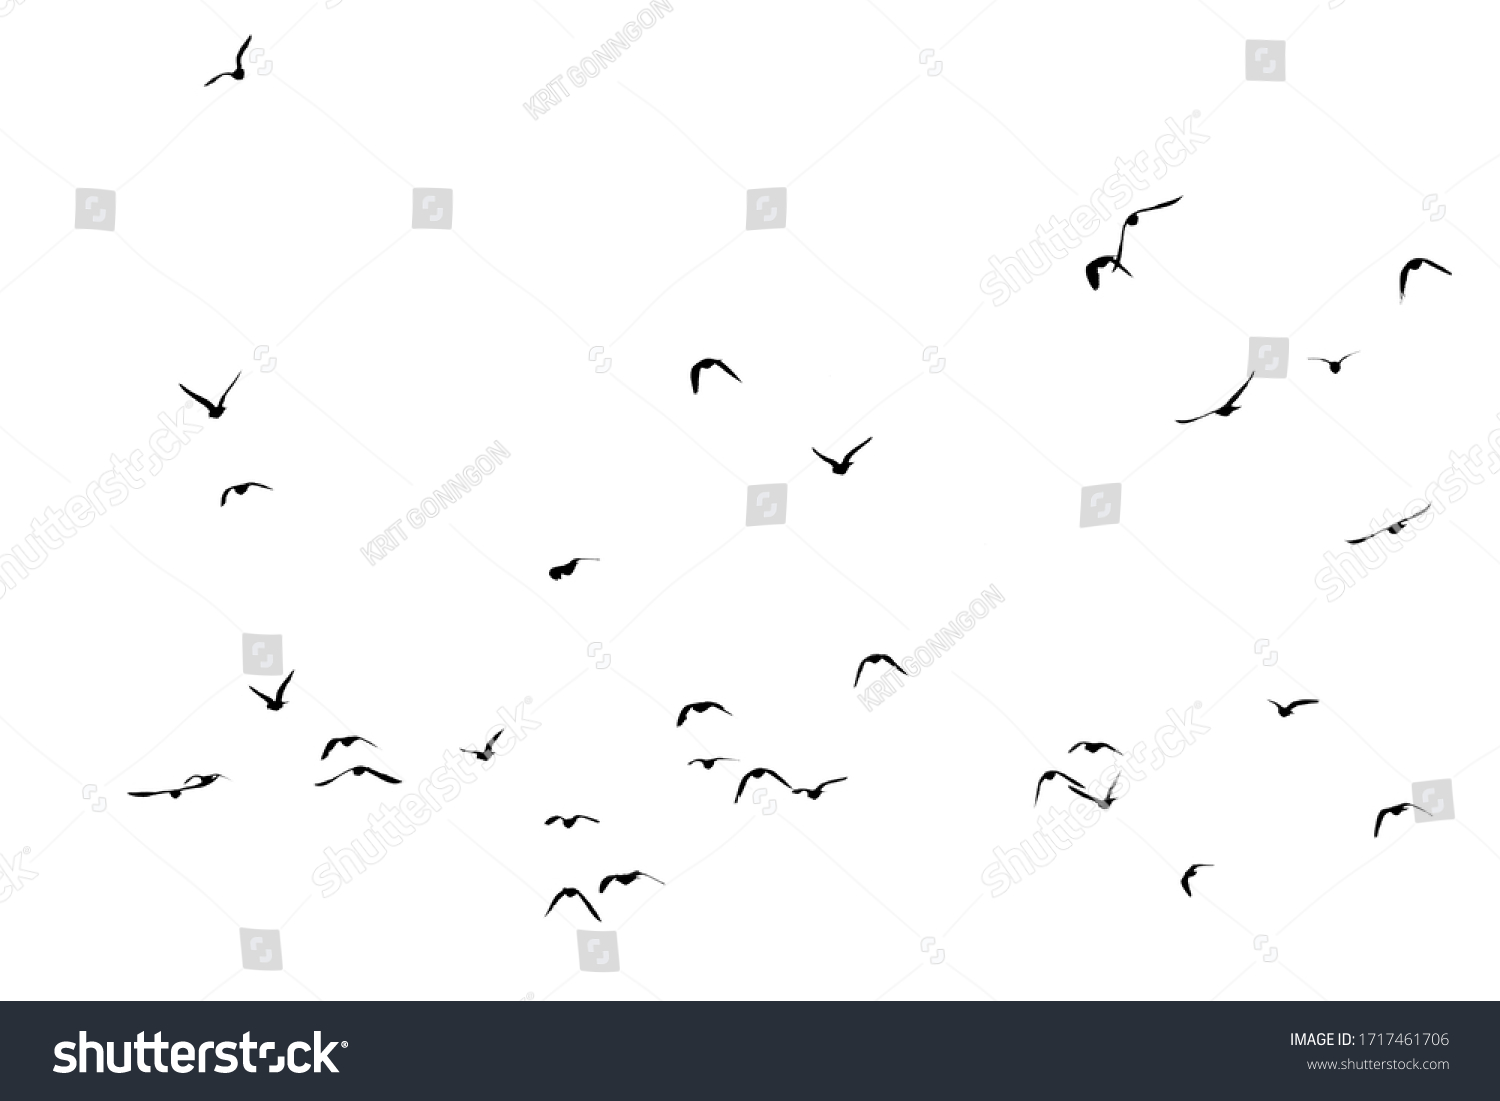 White flock of birds flying #1717461706